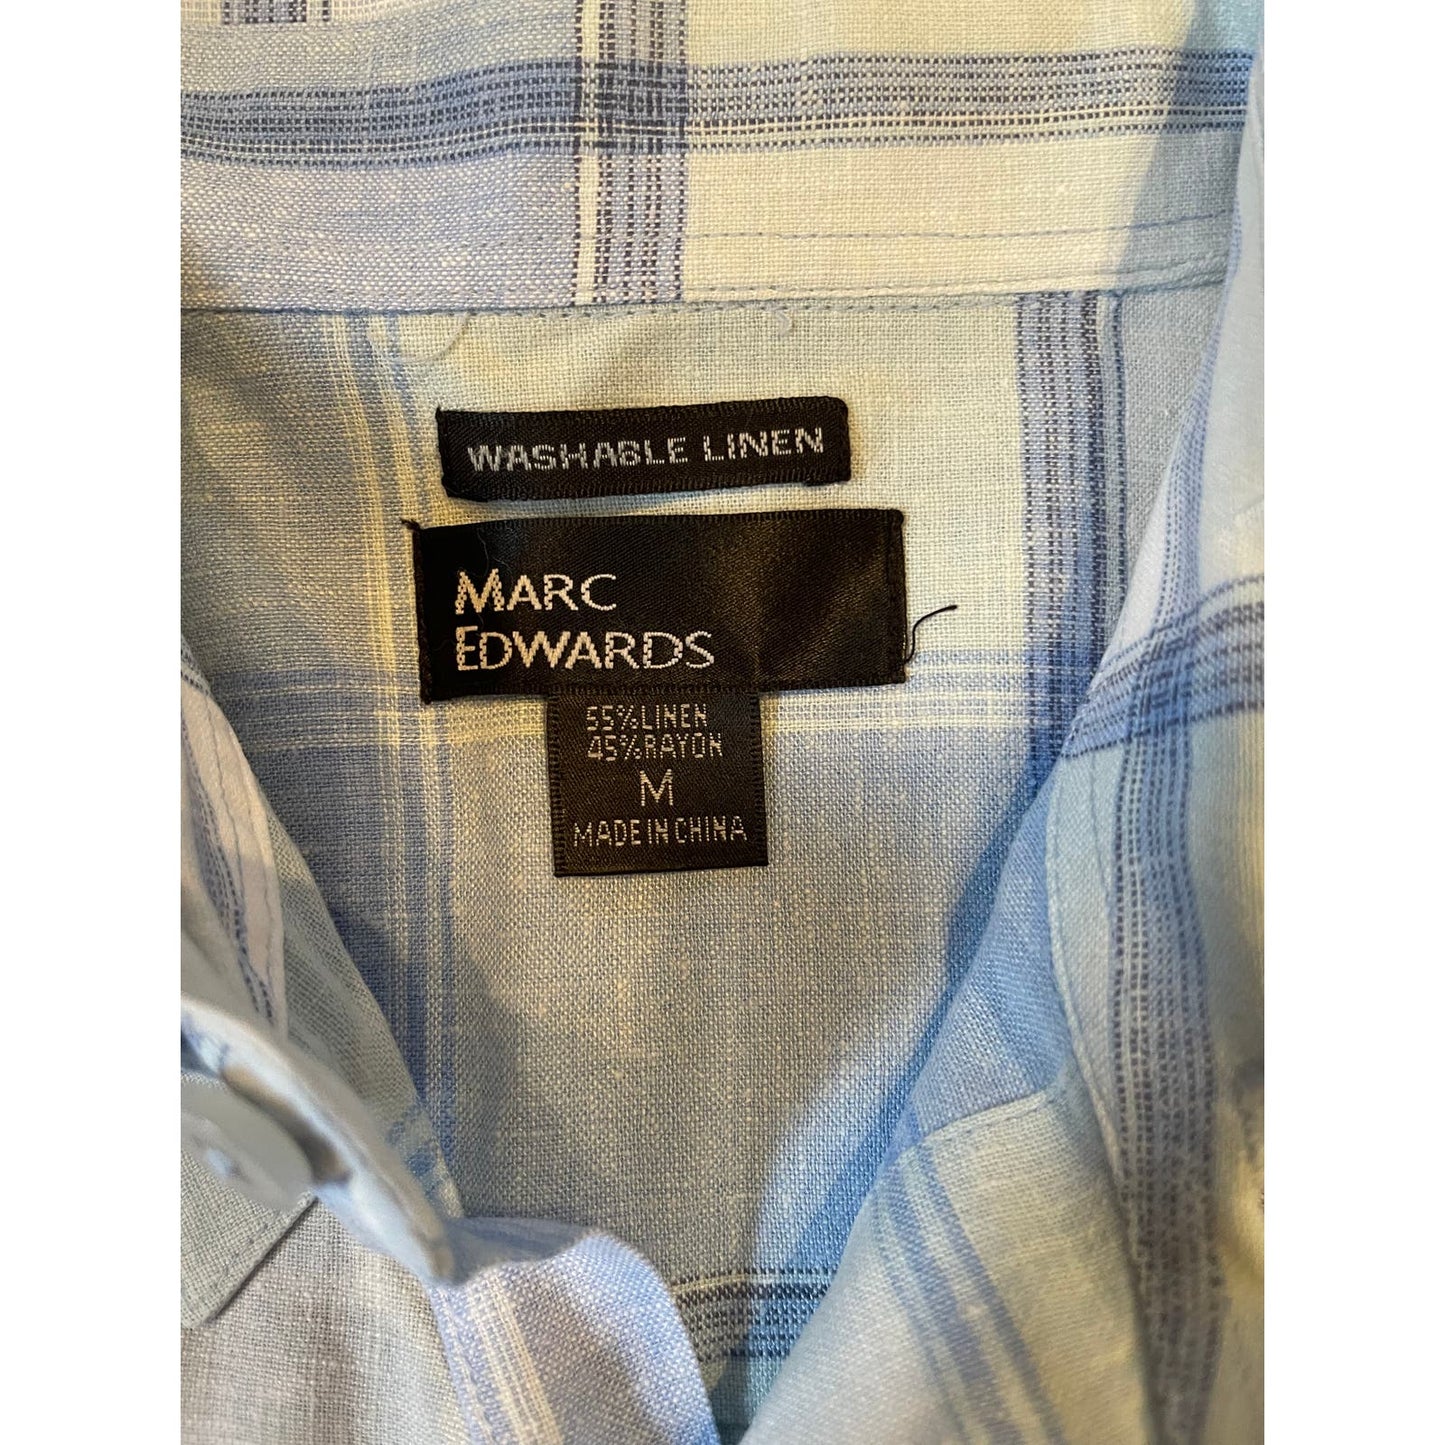 Marc Edwards Men's Linen Blend Short Sleeve Blue Plaid Button Front Shirt Size M